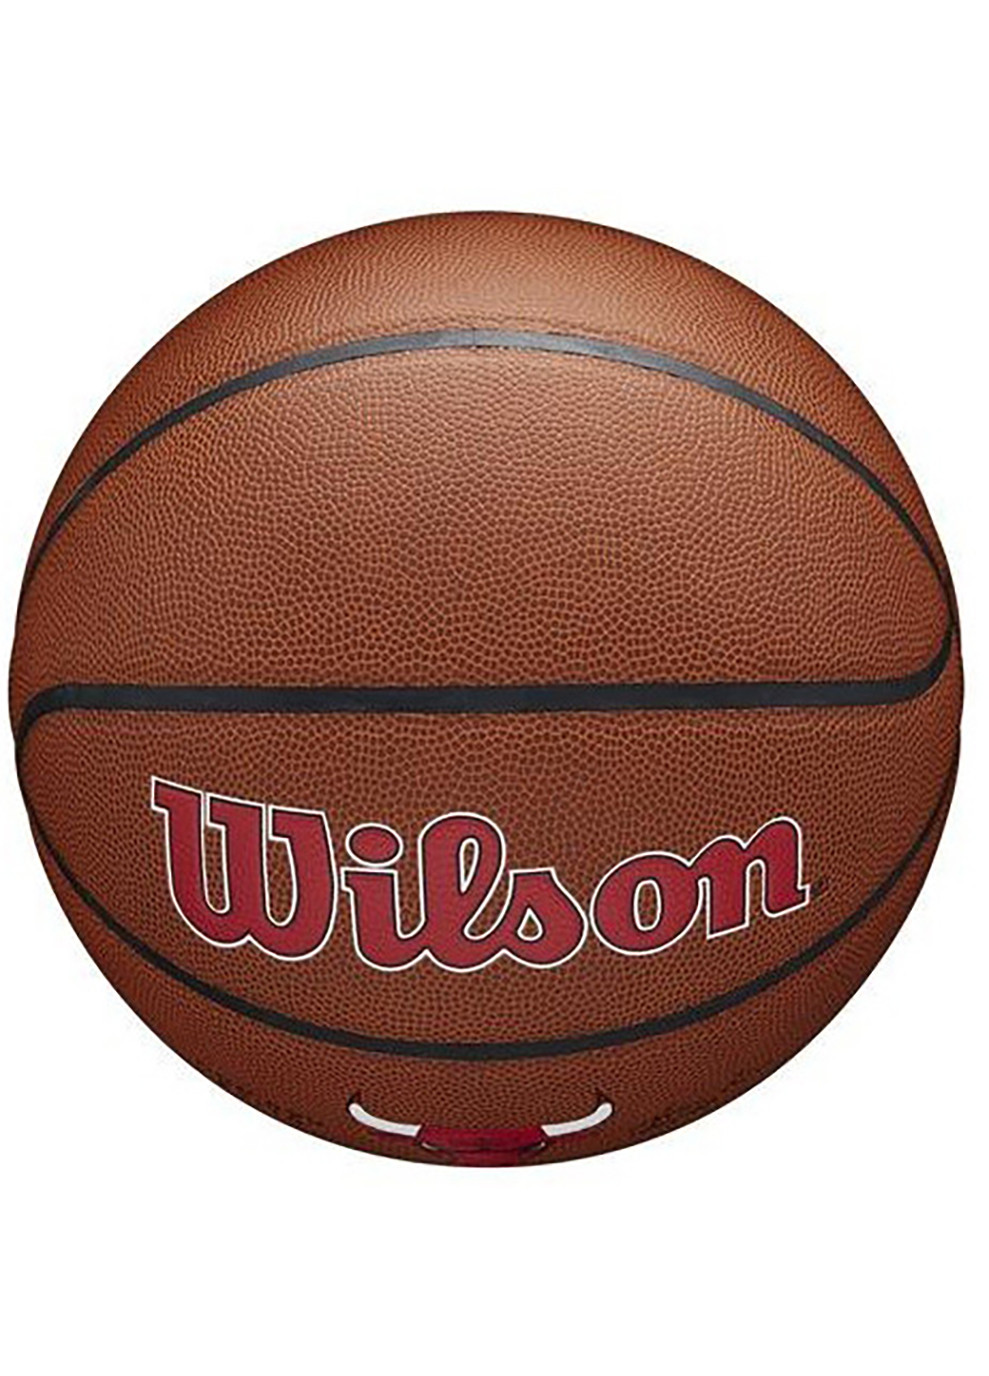 Мяч баскетбольный NBA Team Composite Chicago Bulls Size 7 (WTB3100XBCHI) Wilson (253677901)